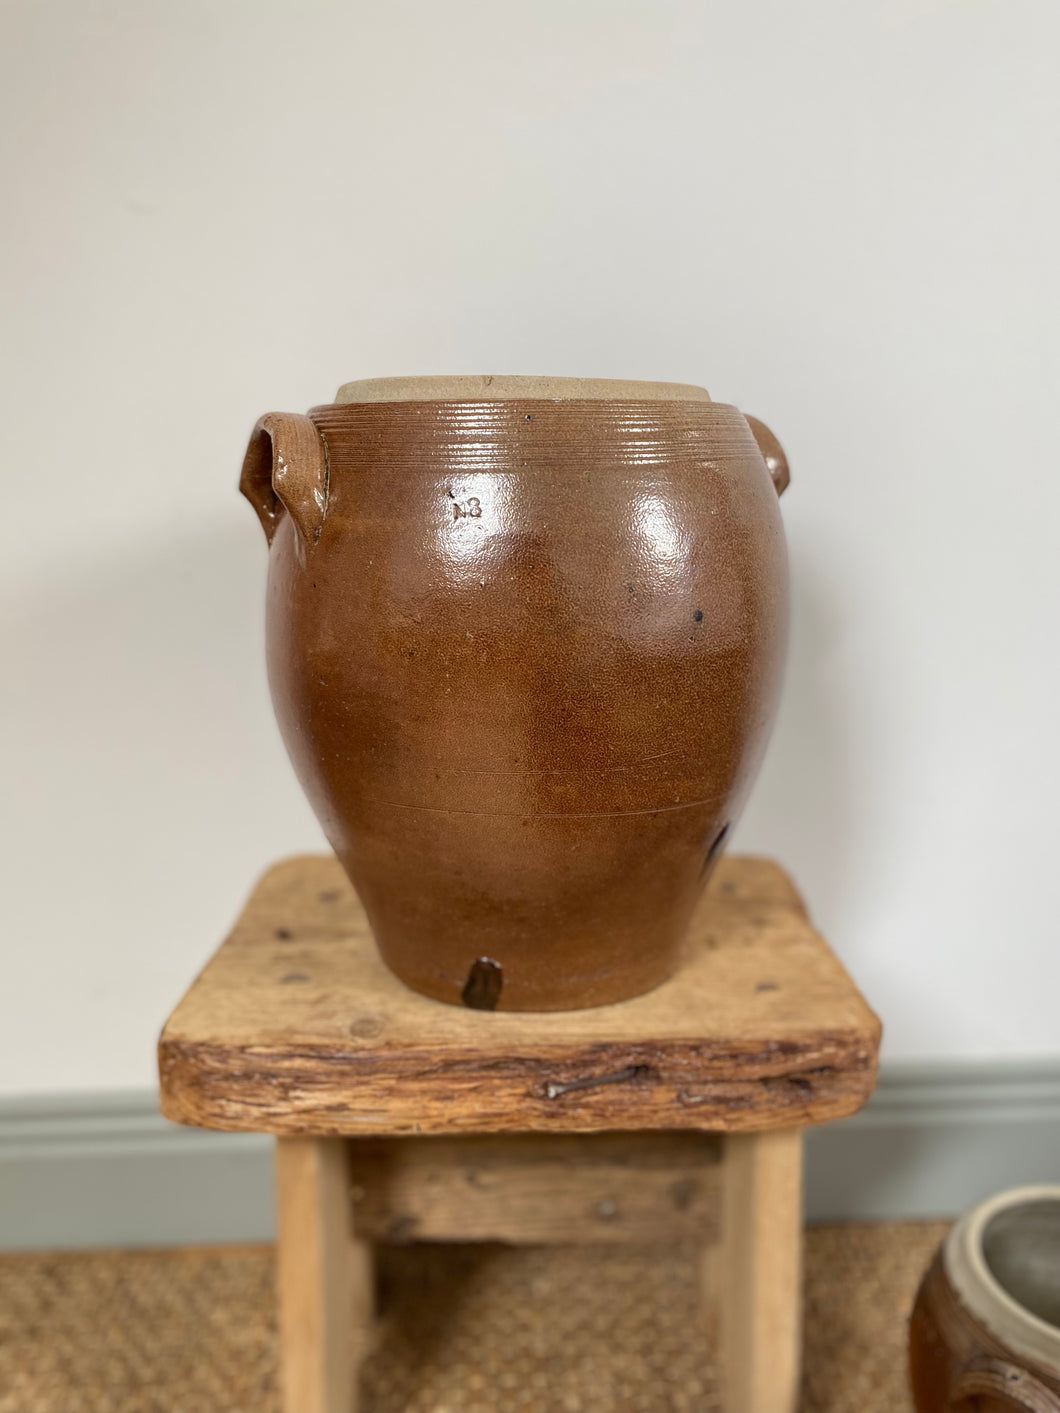 Antique French sandstone preserving jars